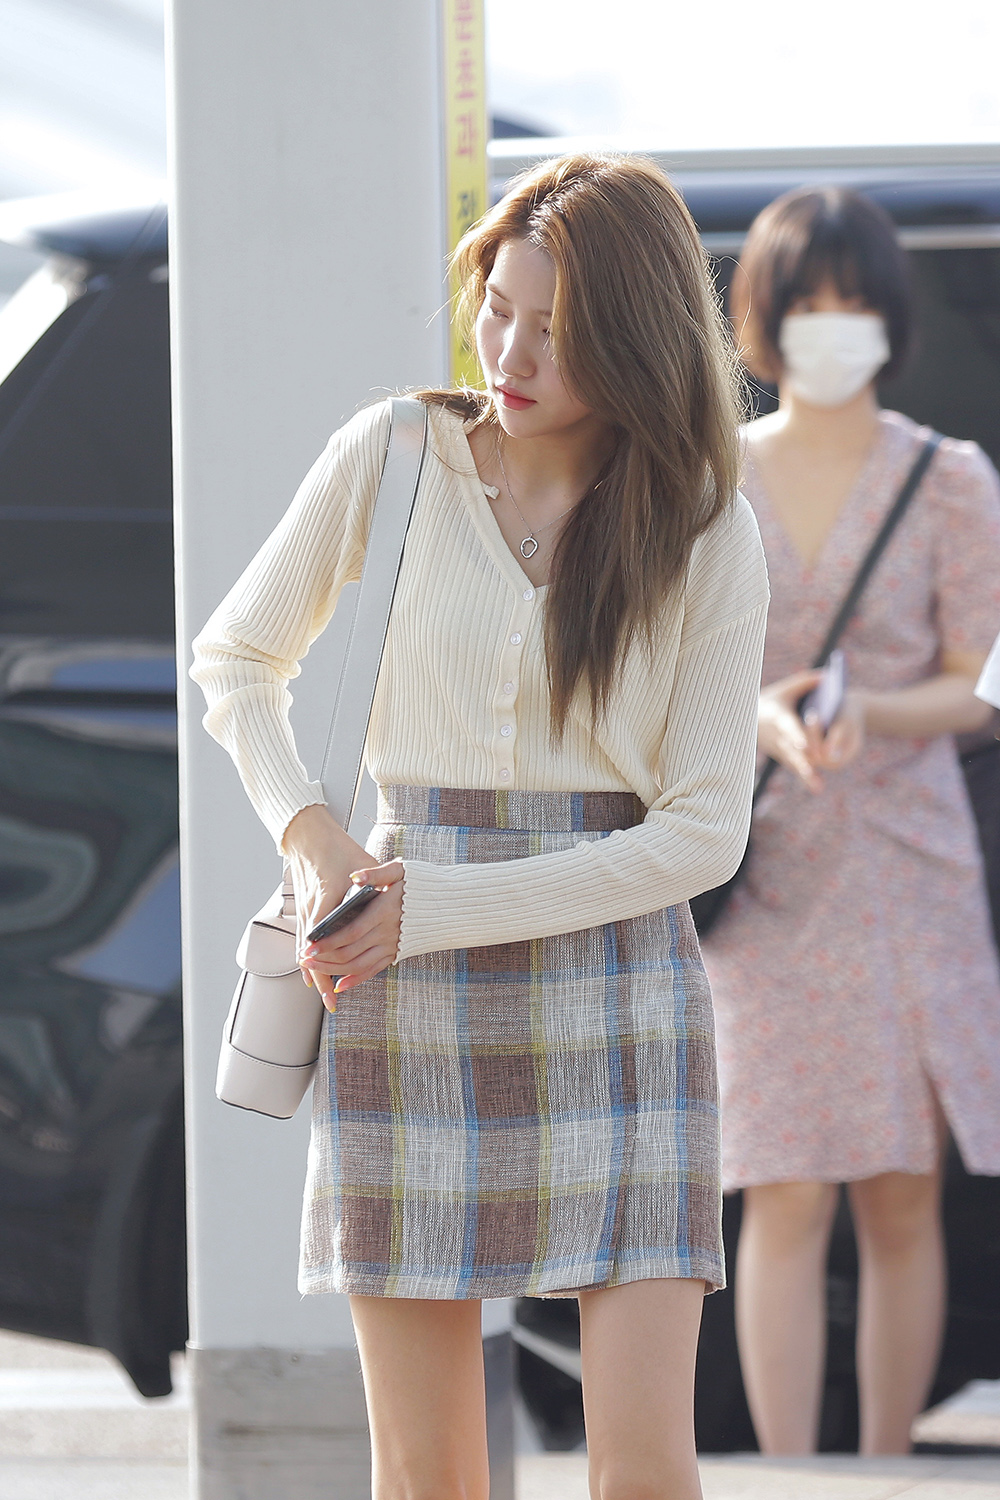 BBYB 여자친구 소원 공항패션 착용 가방 (비비와이비 틴디백)